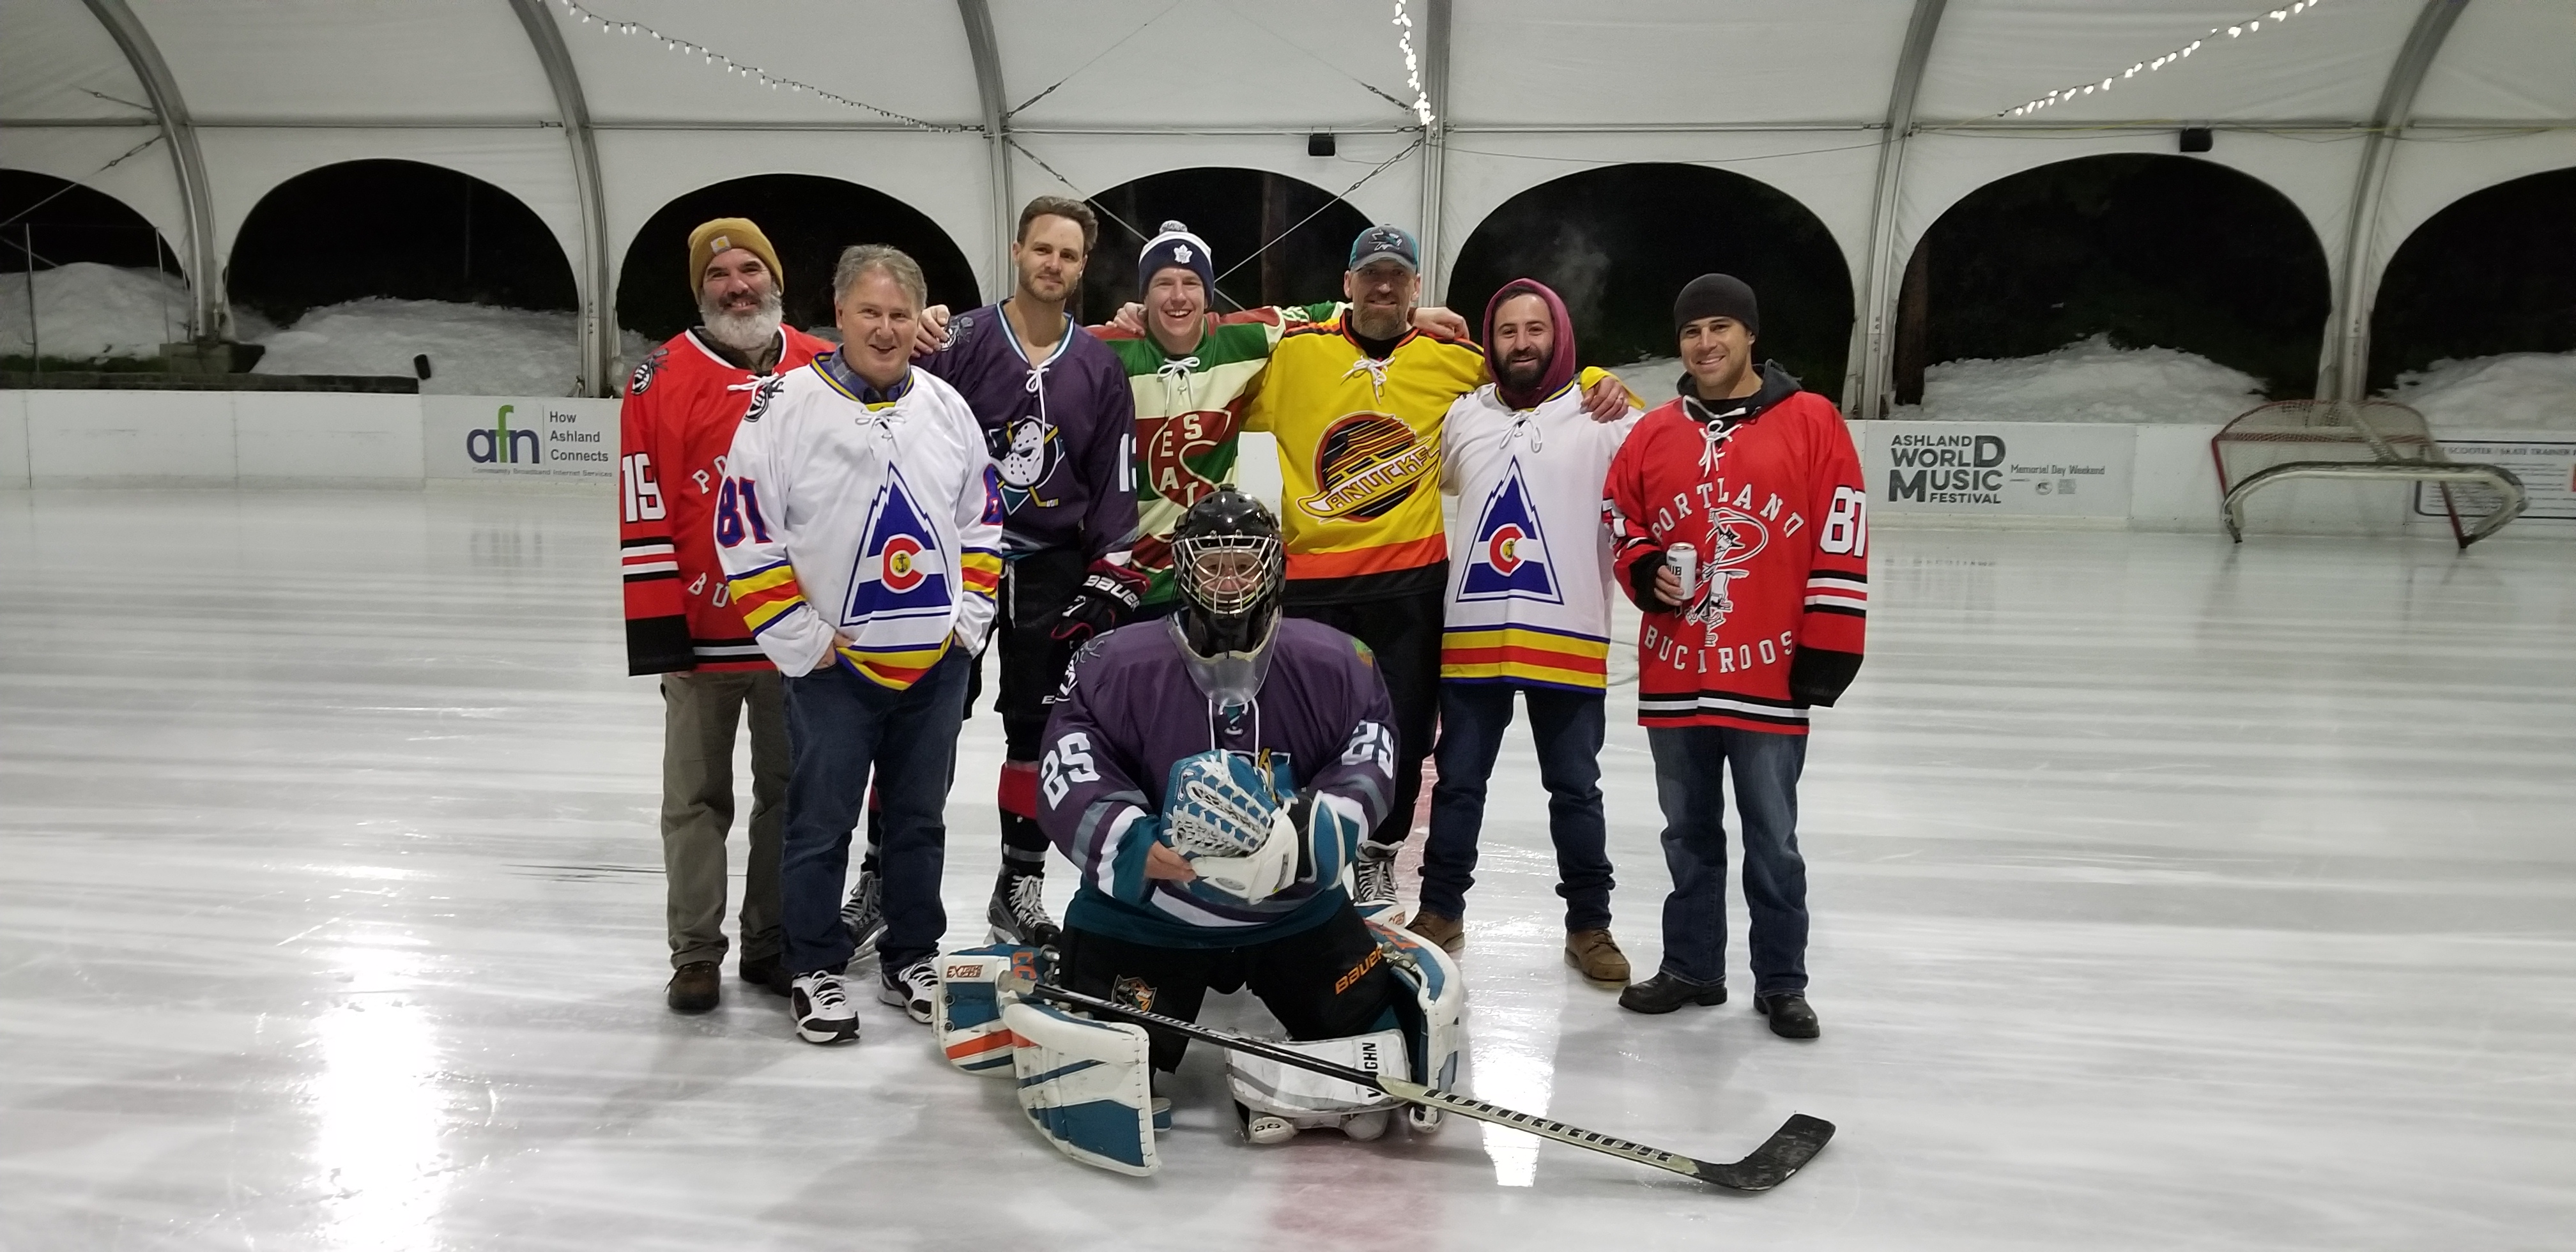 Humboldt Hockey Players at Ashland 3 on 3